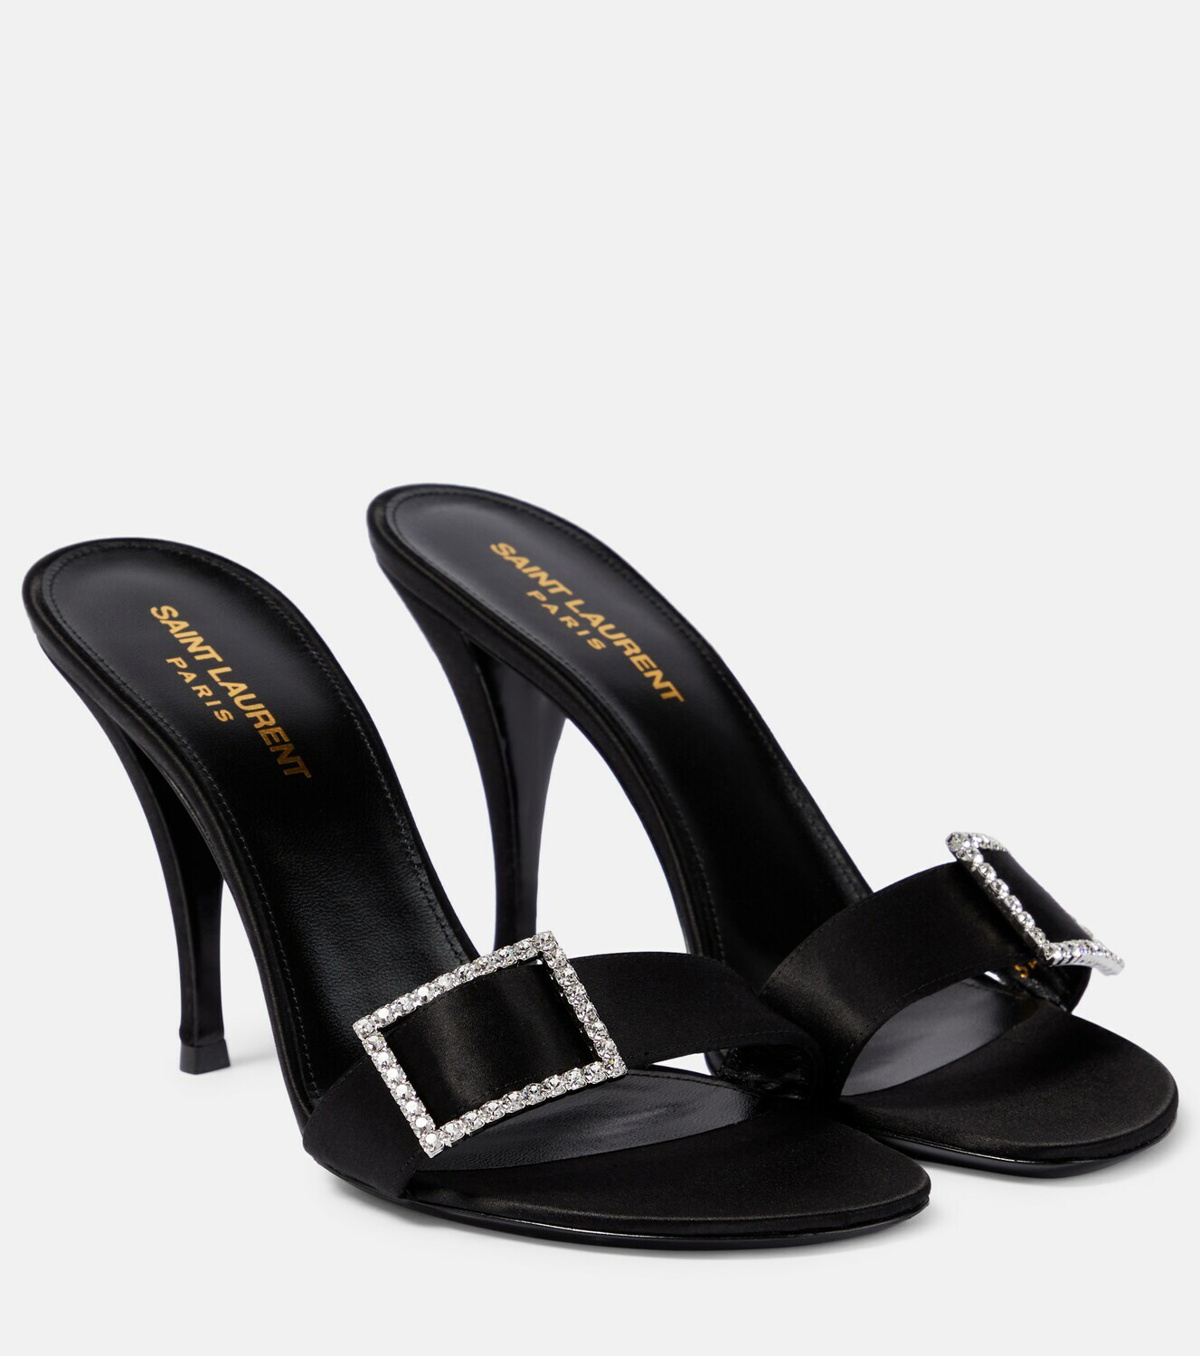 Ava 105 Embellished Satin Sandals in Black - Saint Laurent